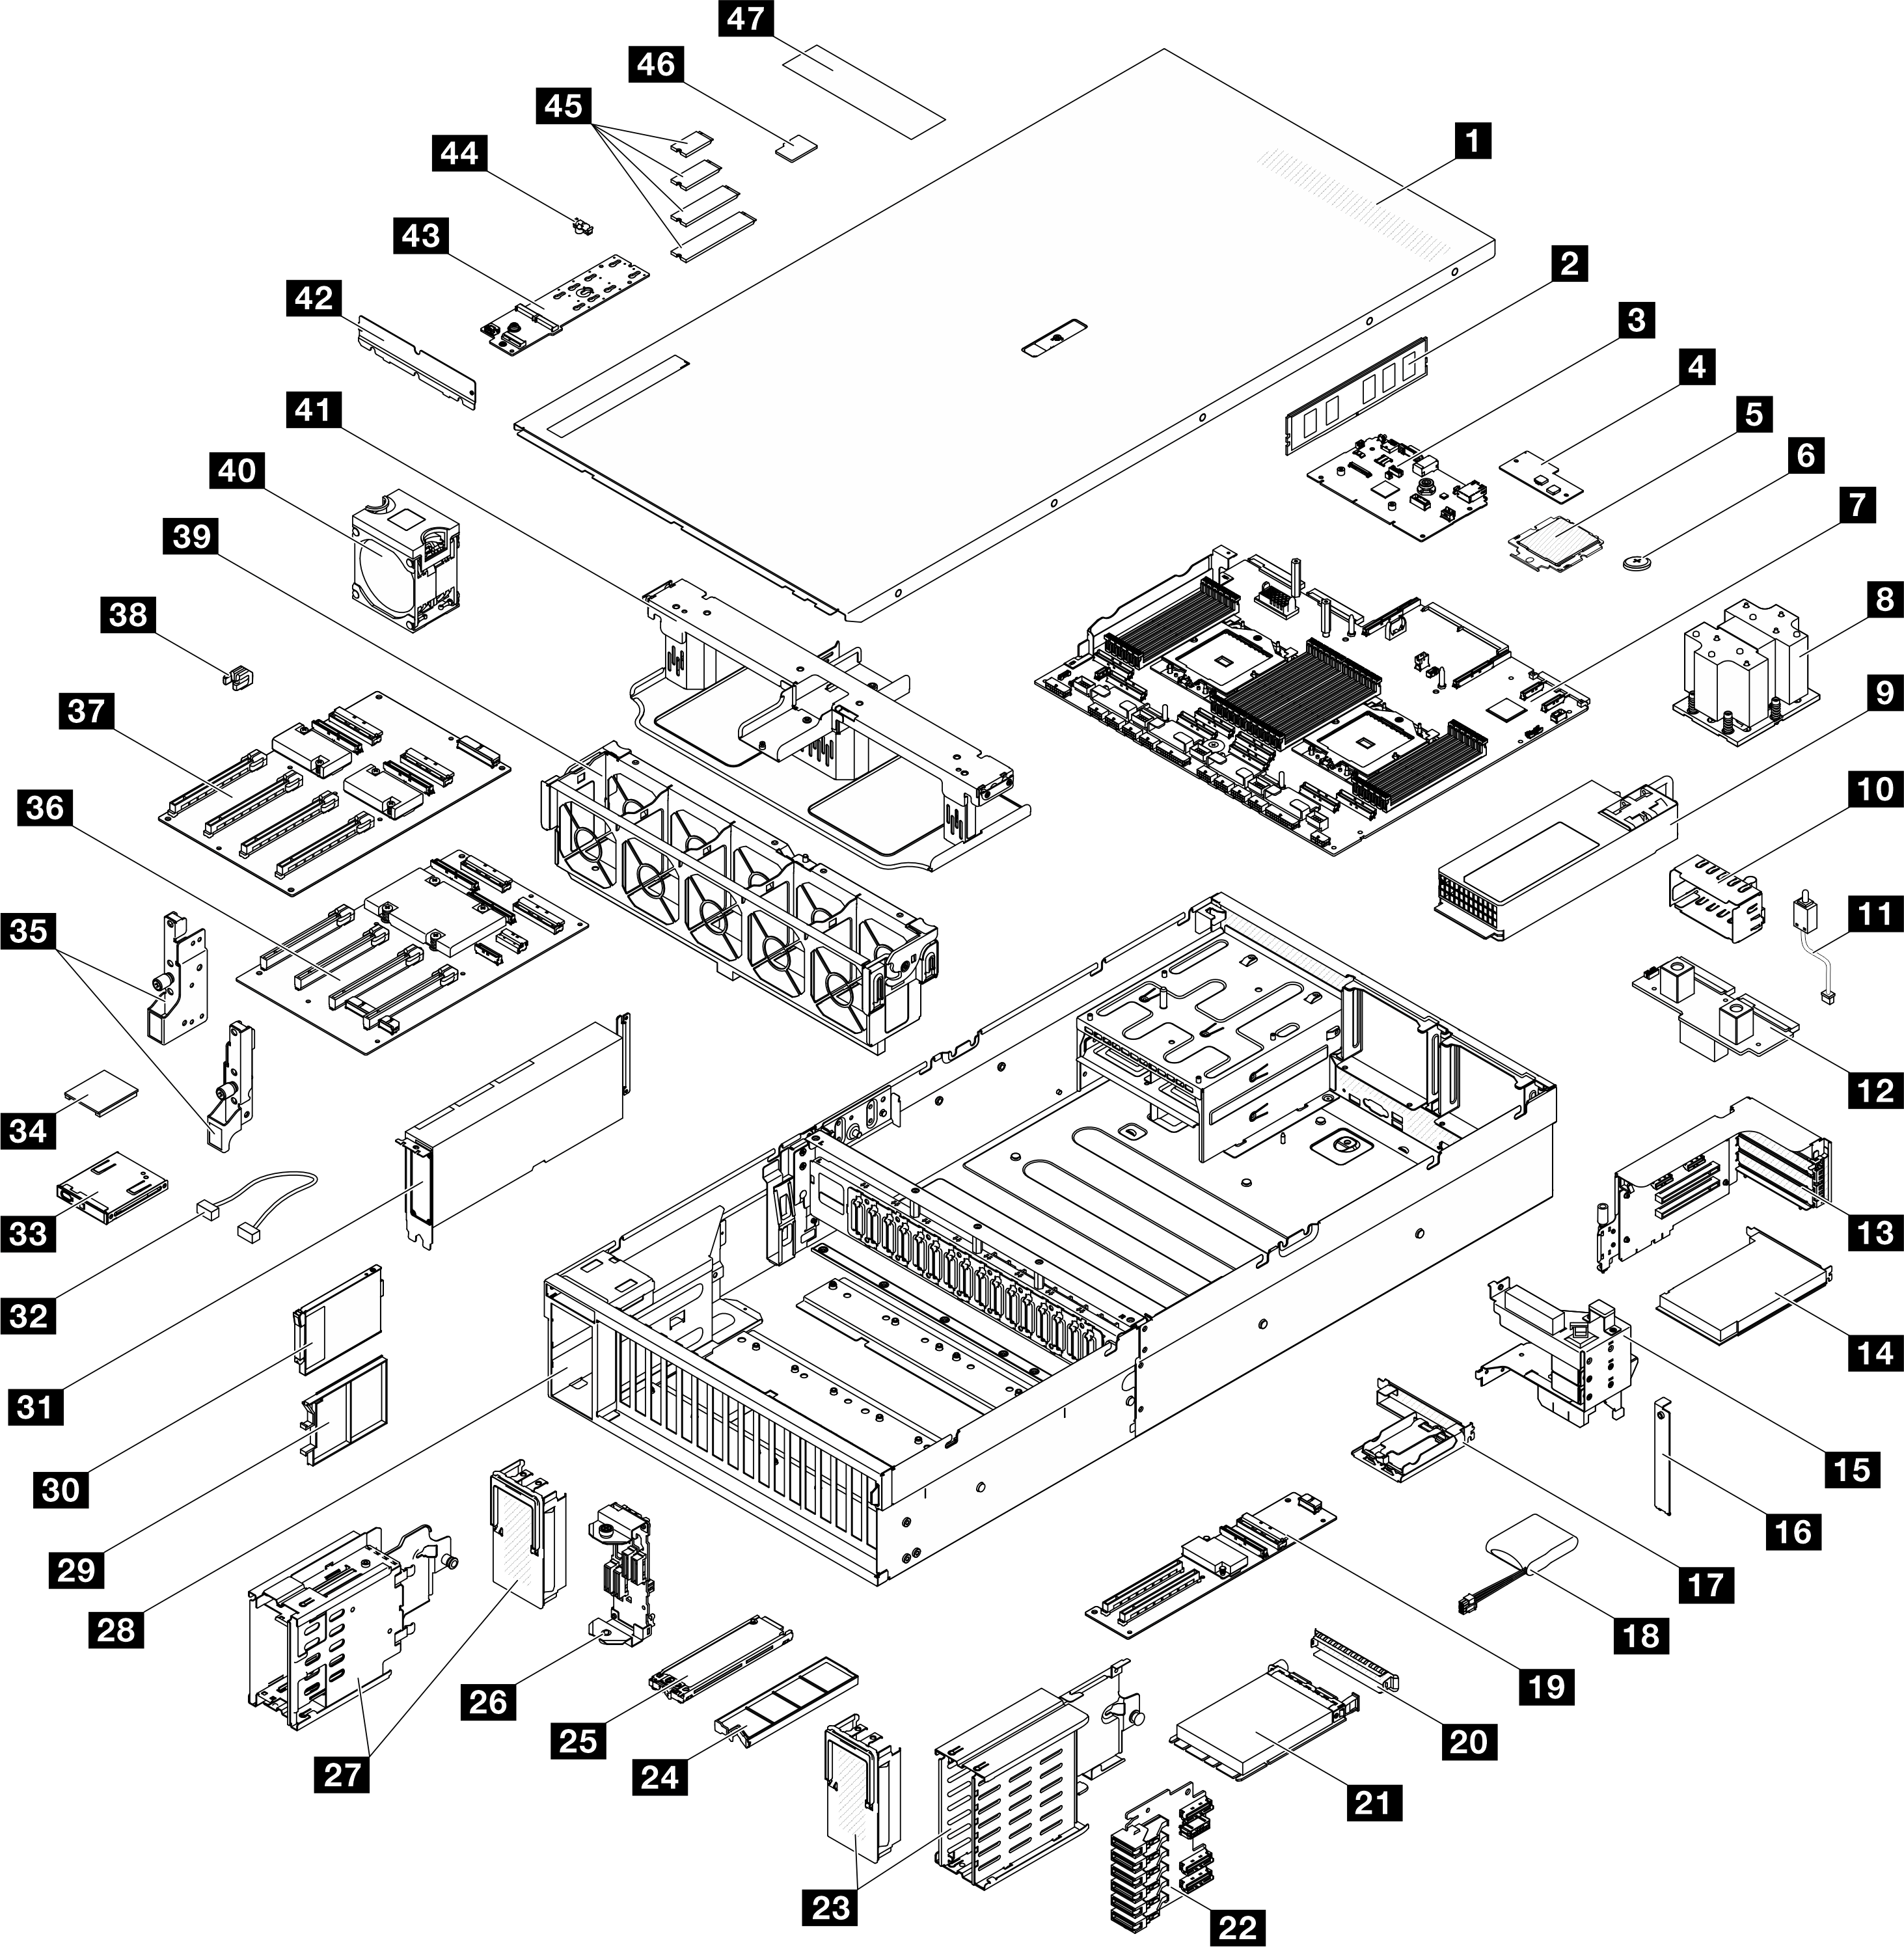 Server components of the modello di GPU 8-DW